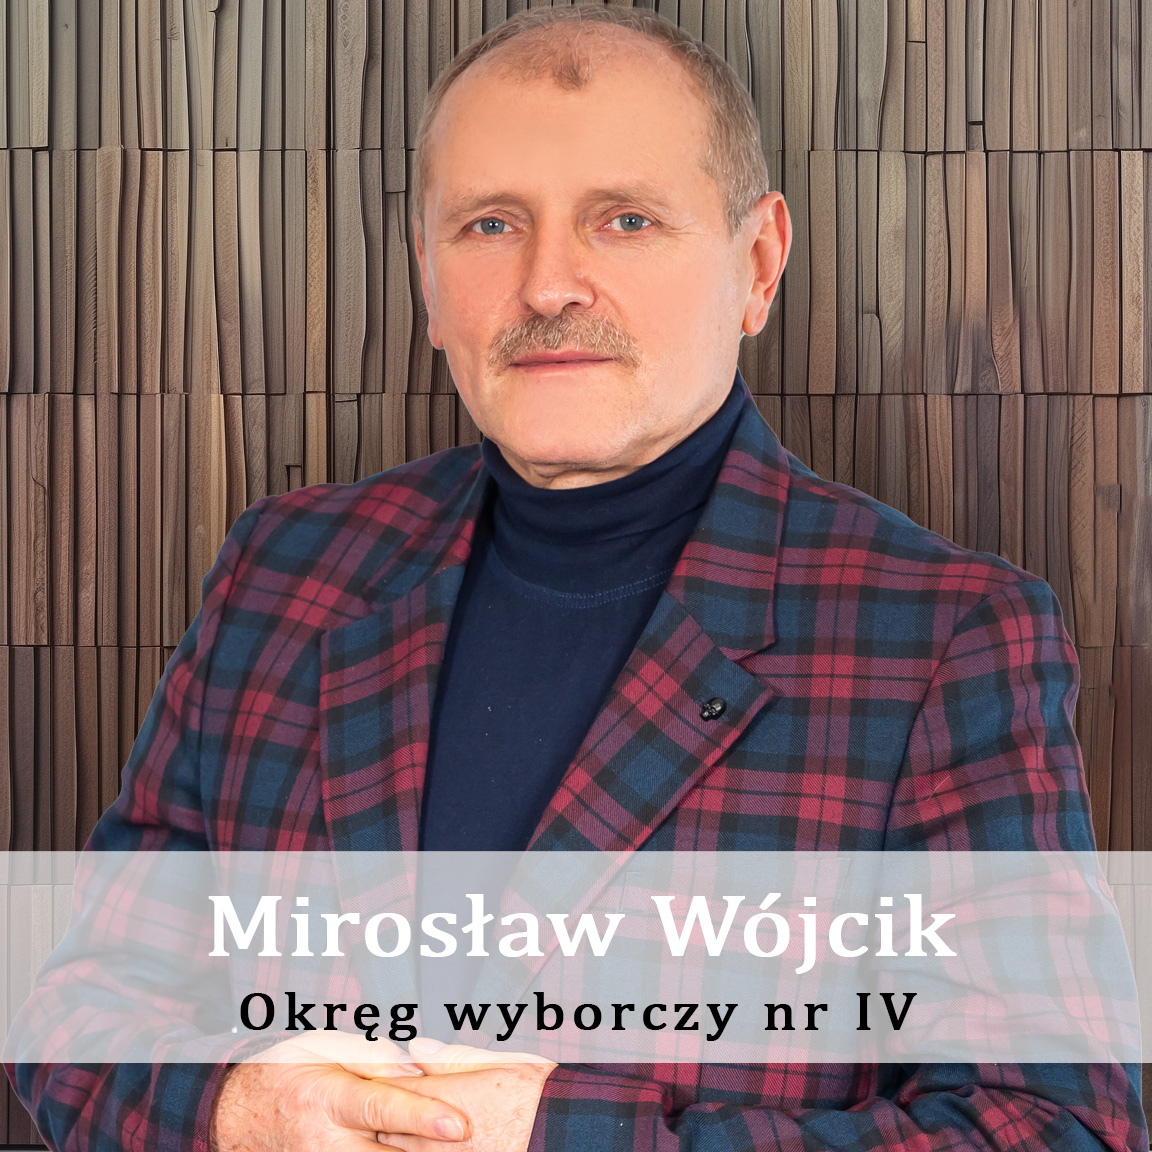 Mirosław_Wójcik-Okręg-wyporczy-nr-4-Radny-Miasto-Wisła